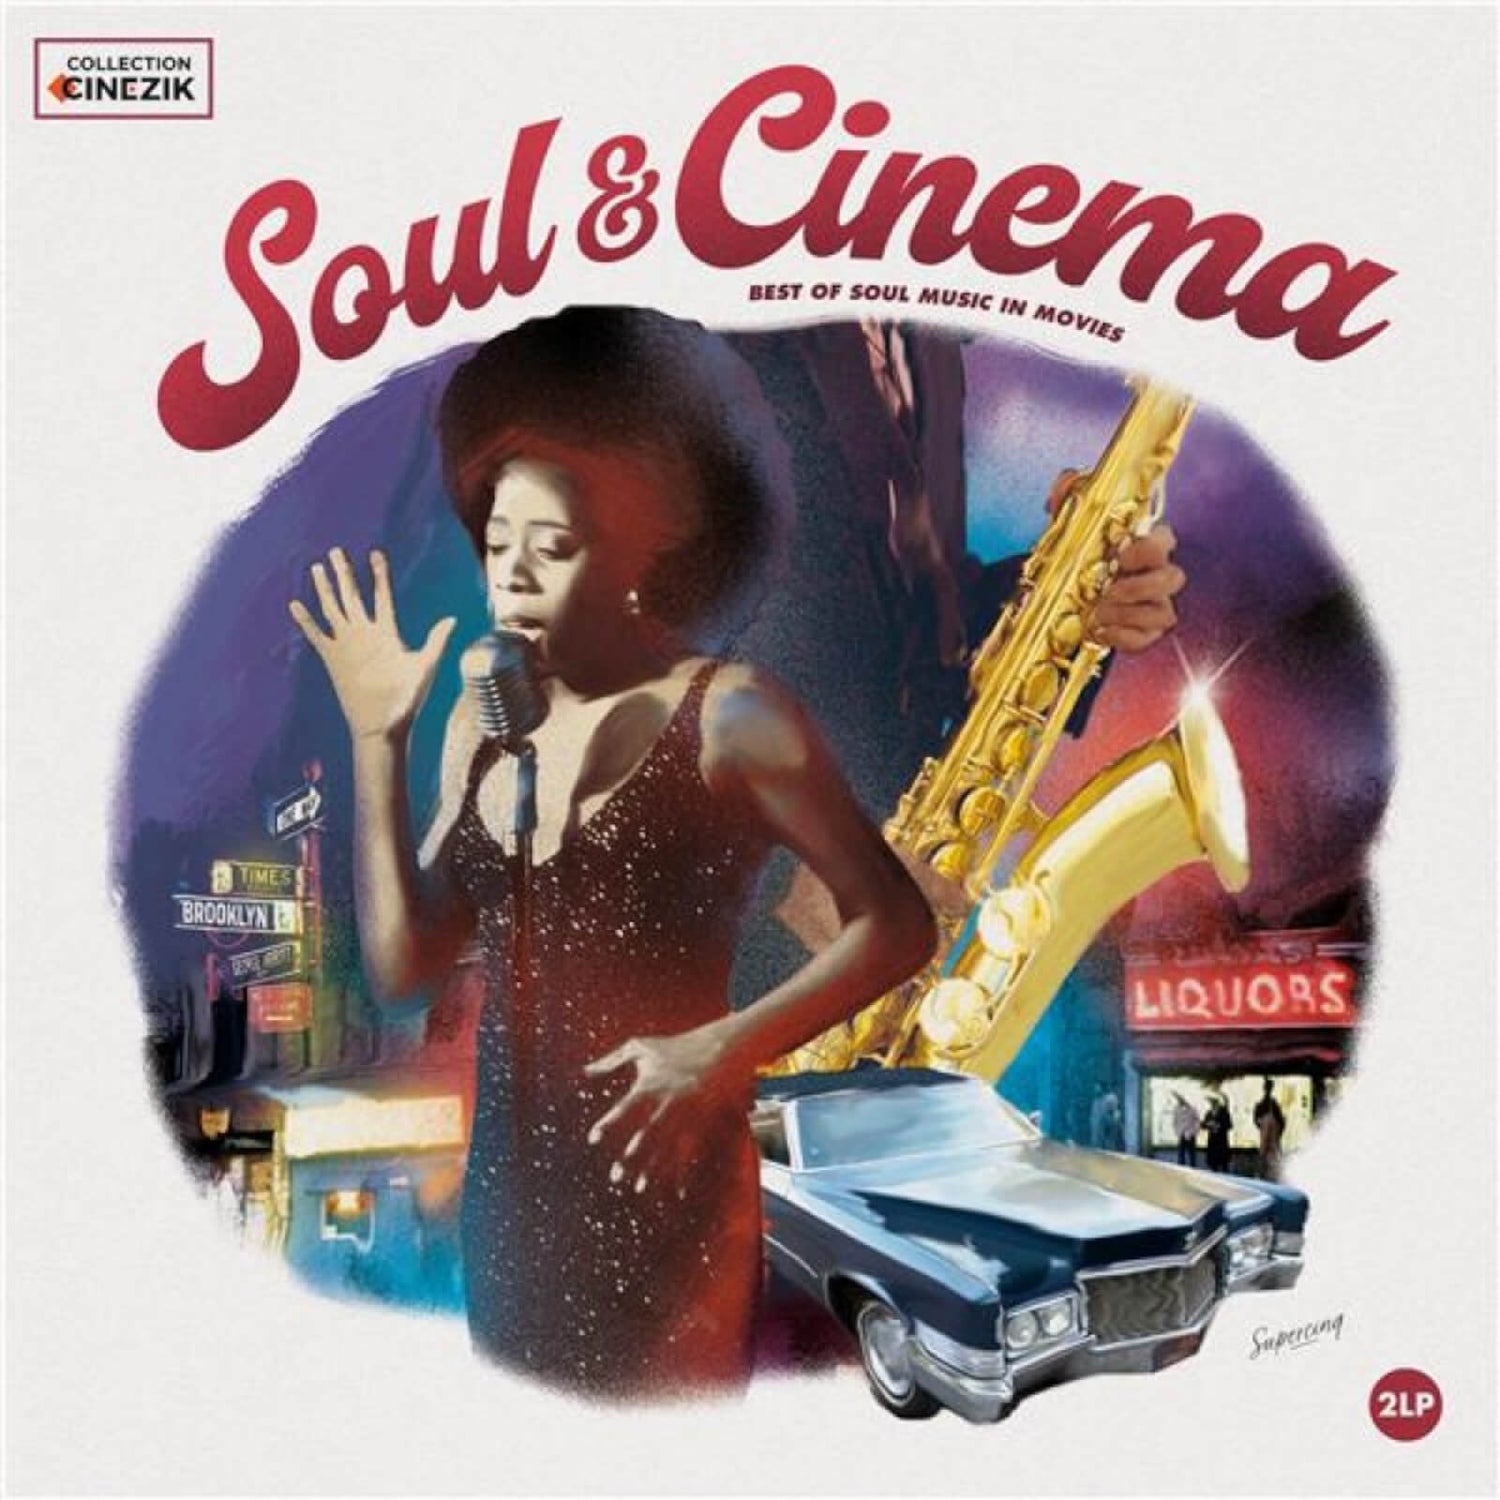 Soul & Cinema – Best of Soul Music in Movies Vinyl 2LP